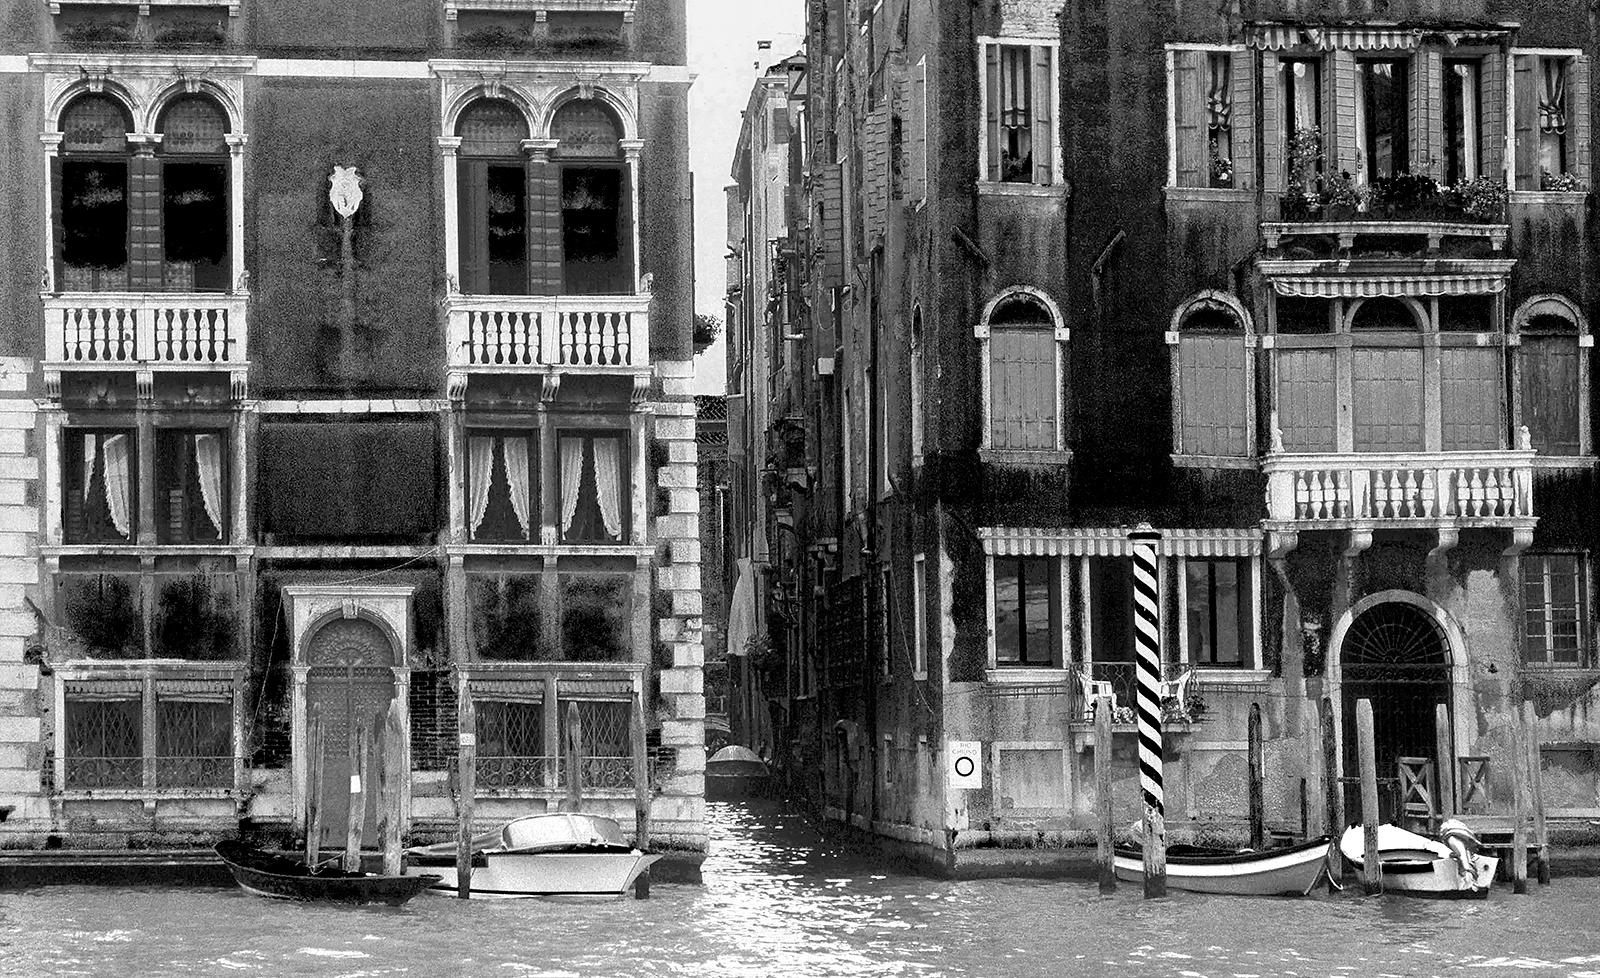 Venice 2 – signierter zeitgenössischer Druck in limitierter Auflage, Schwarz-Weiß-Foto, Stadt – Photograph von Ian Sanderson